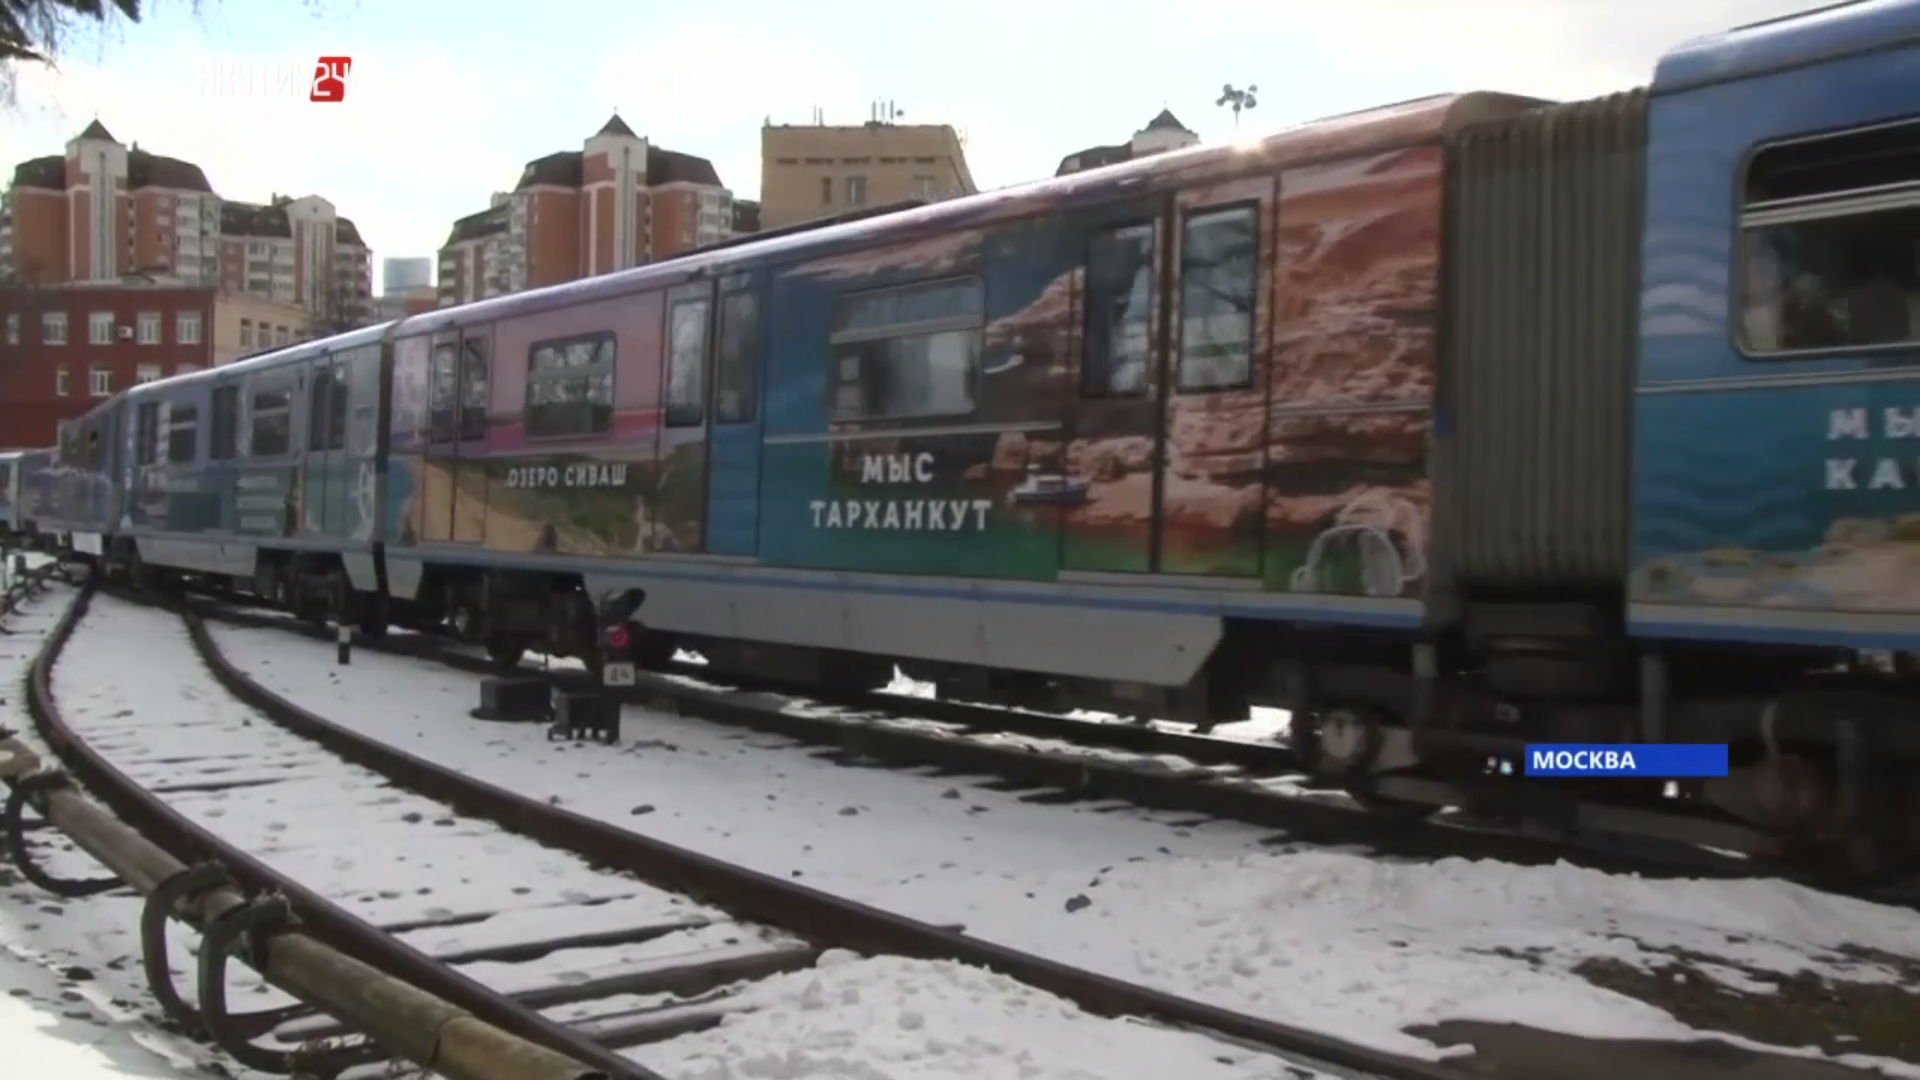 Посвященный Крыму поезд запустили в московском метро